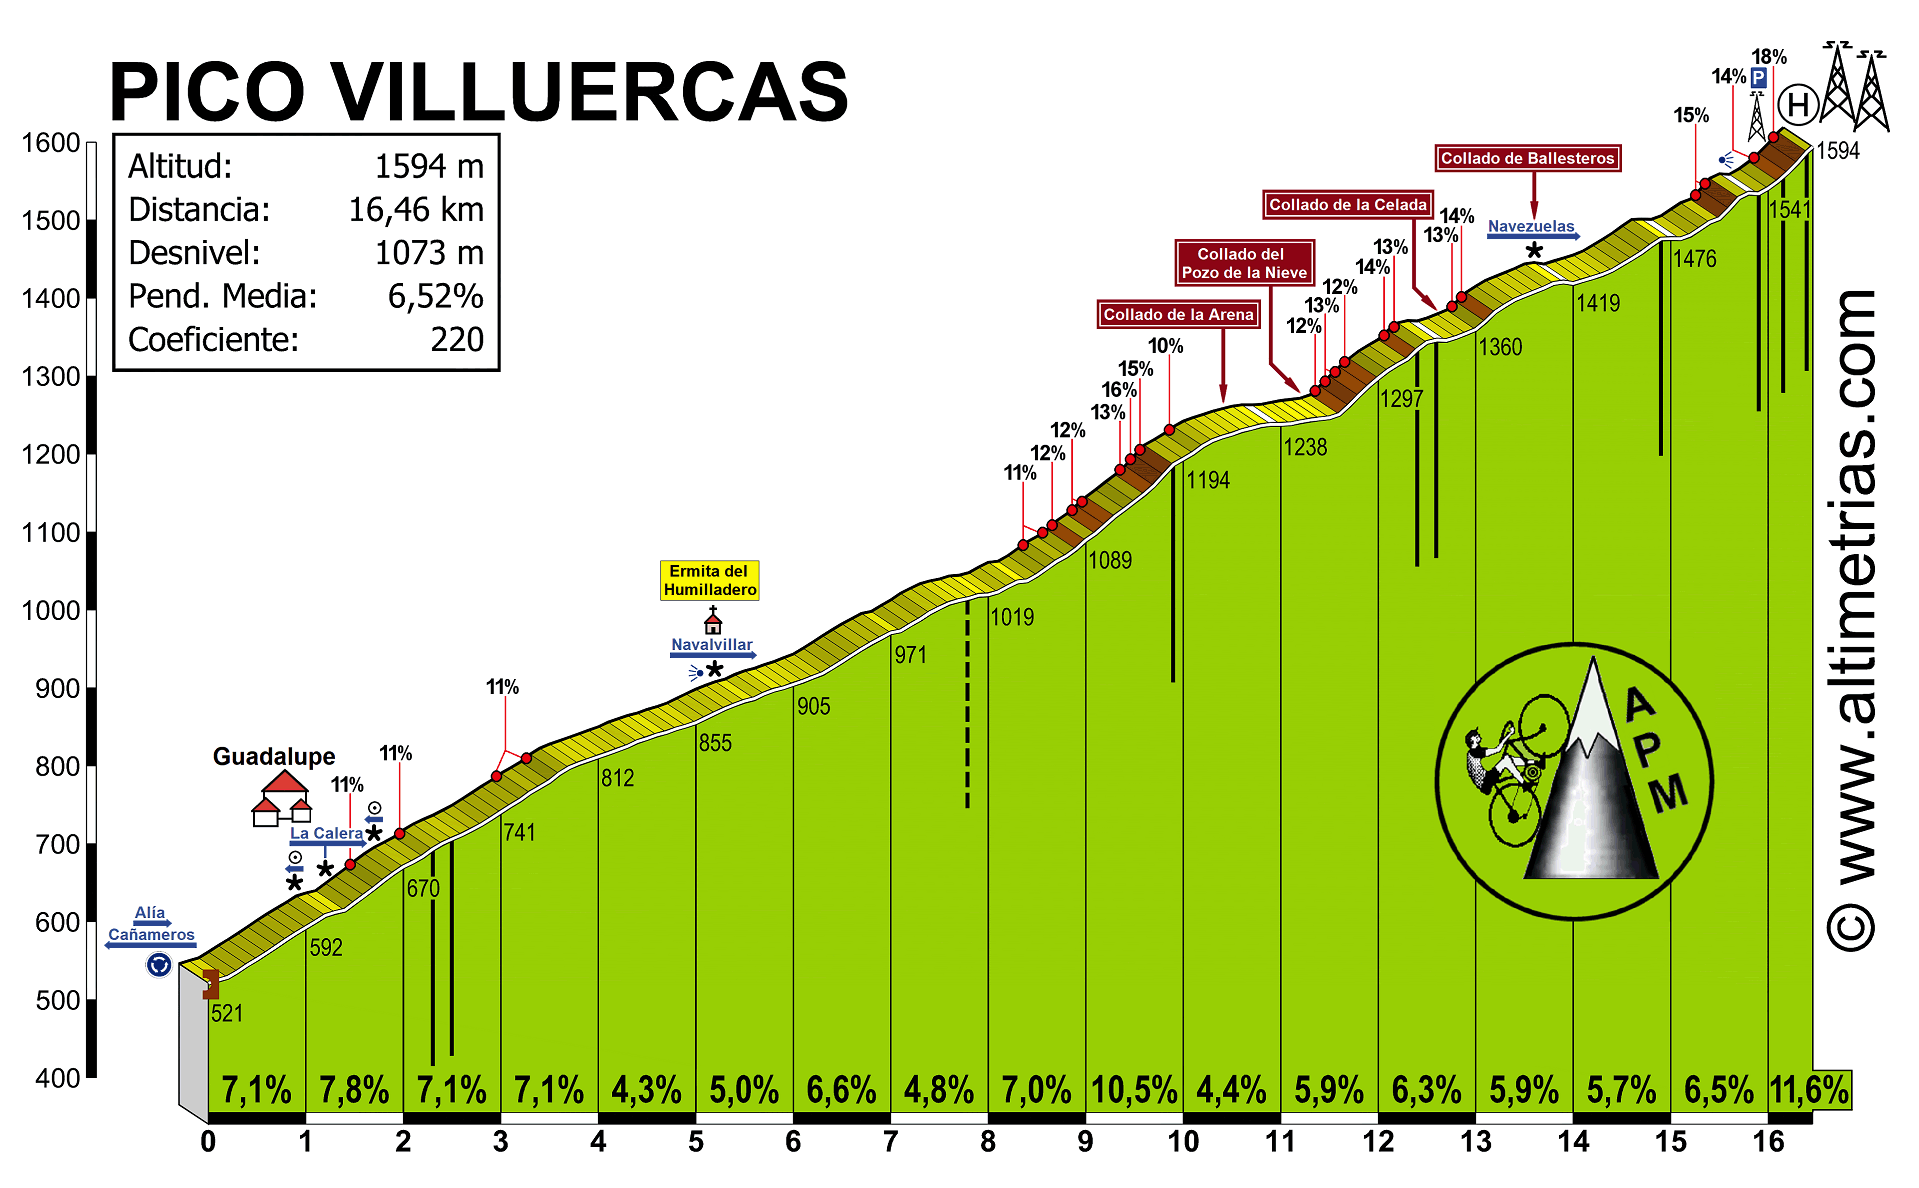 Pico Villuercas